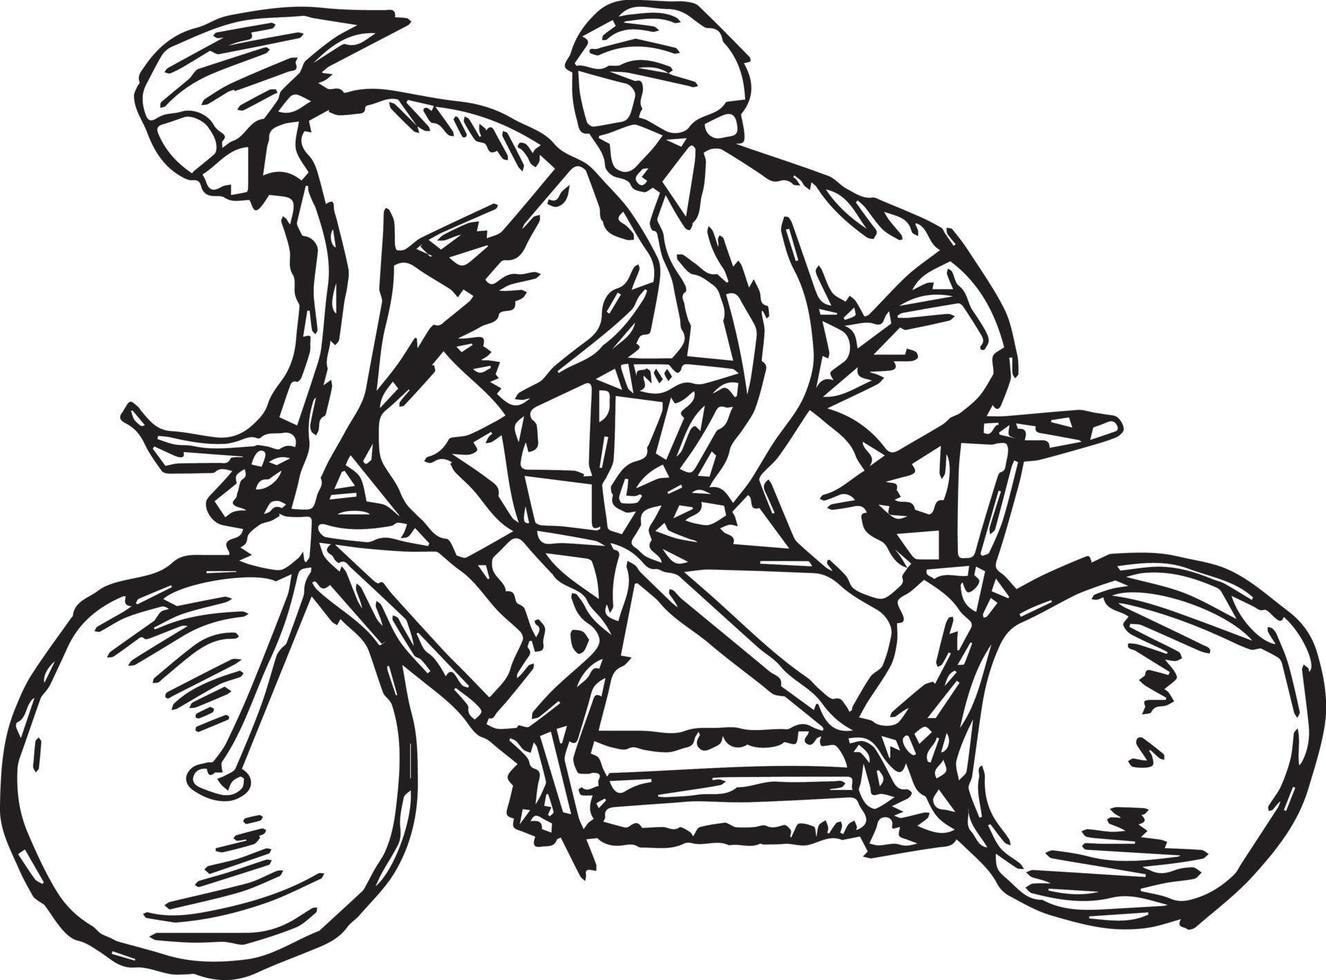 Deux sportifs sur piste cyclable - croquis d'illustration vectorielle vecteur